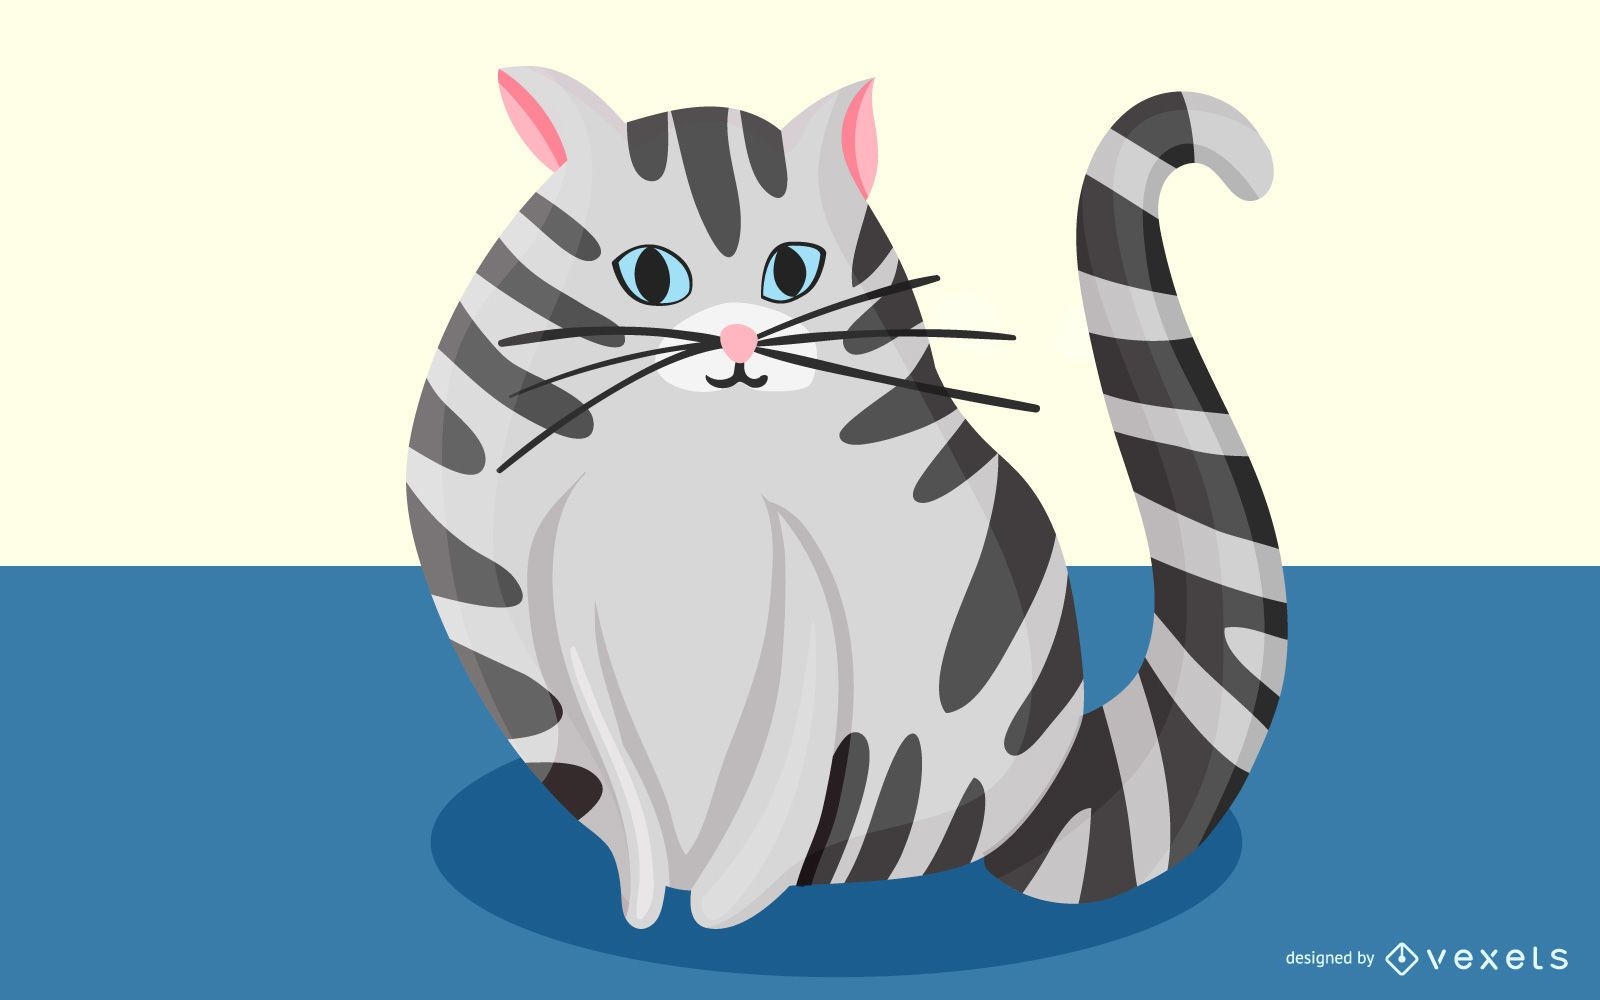 Pet cat illustration design